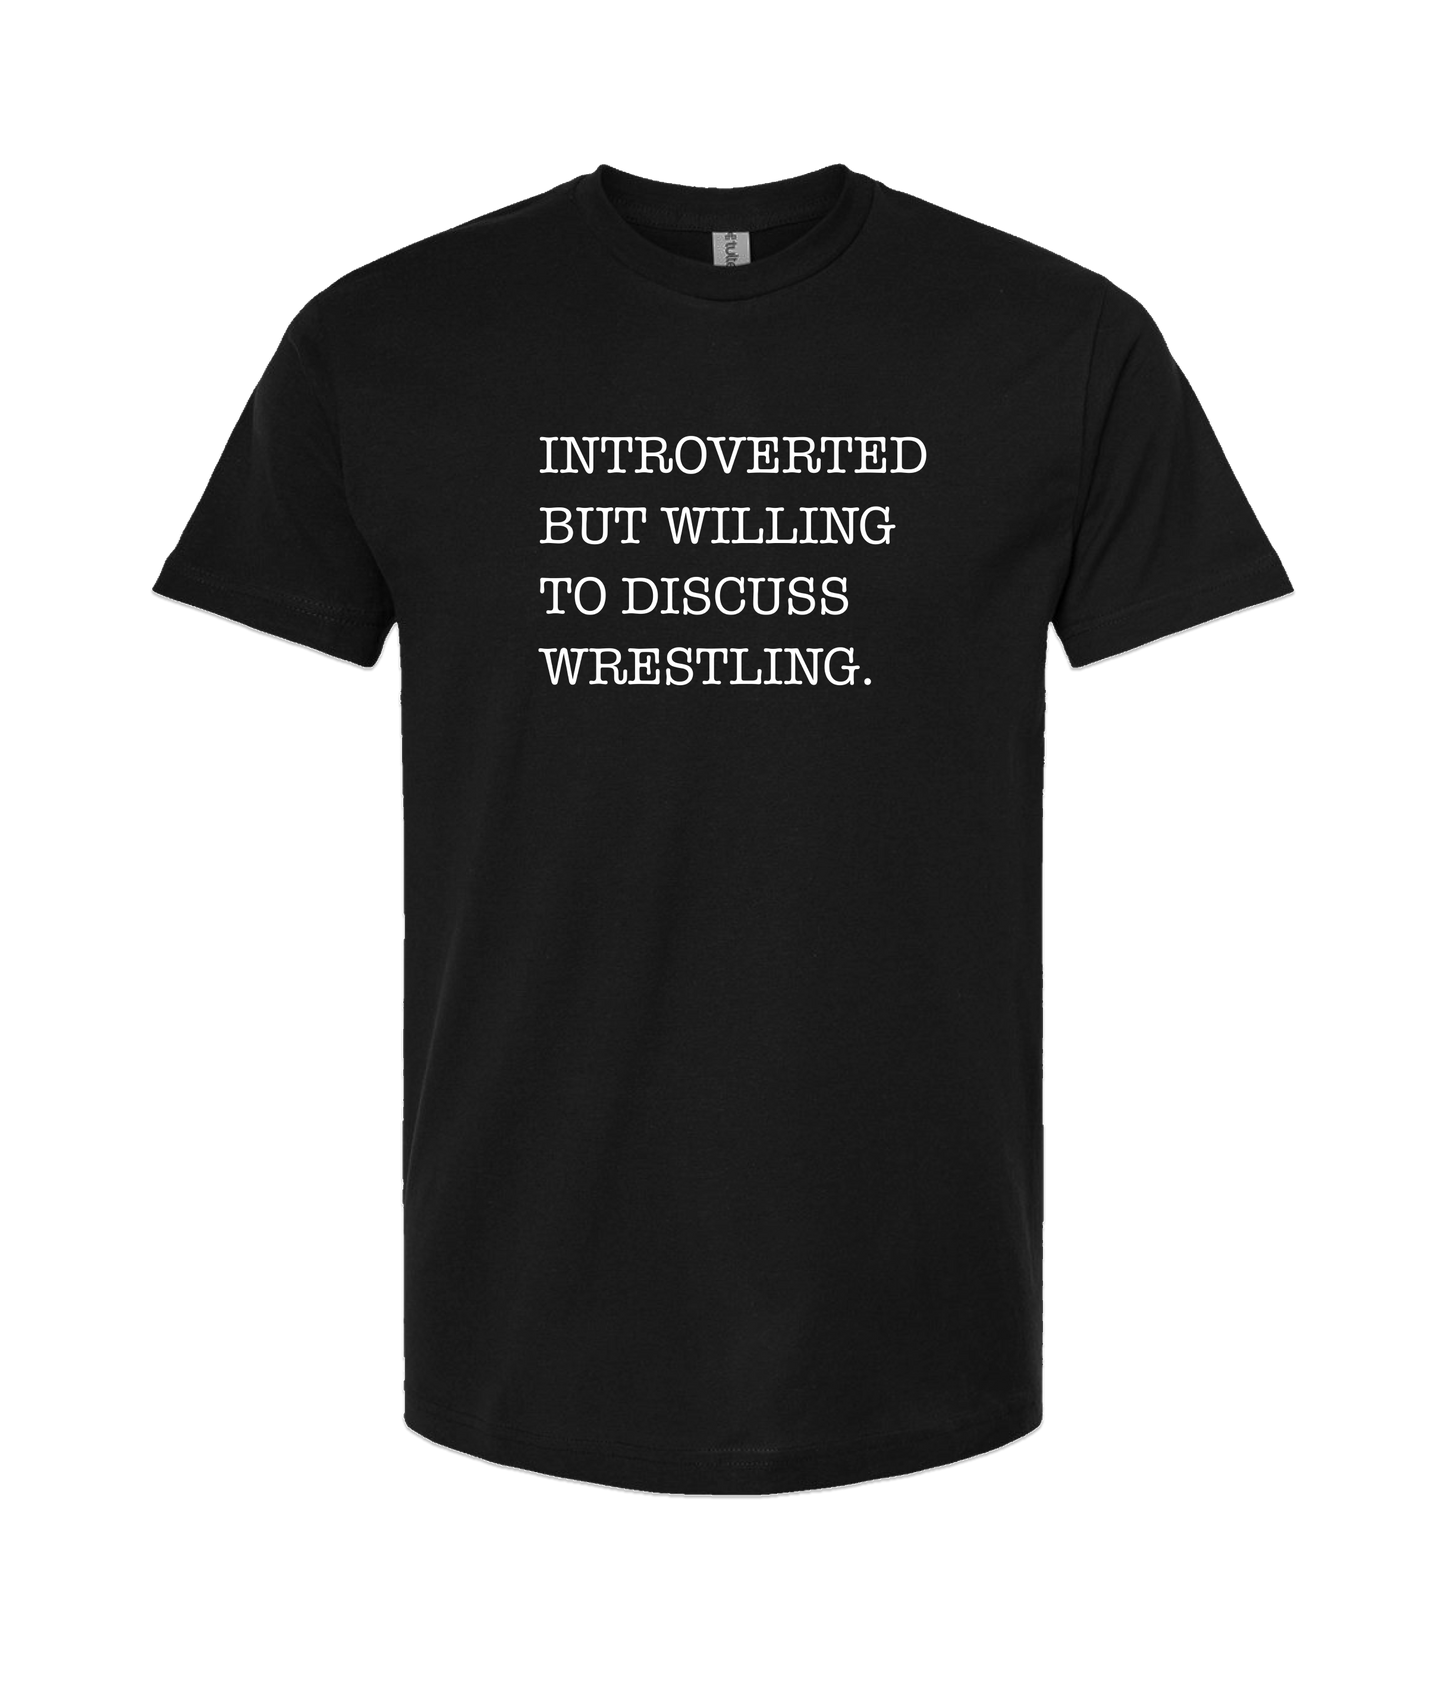 Skank Dollar - Introverted but... Wrestling - Black T Shirt